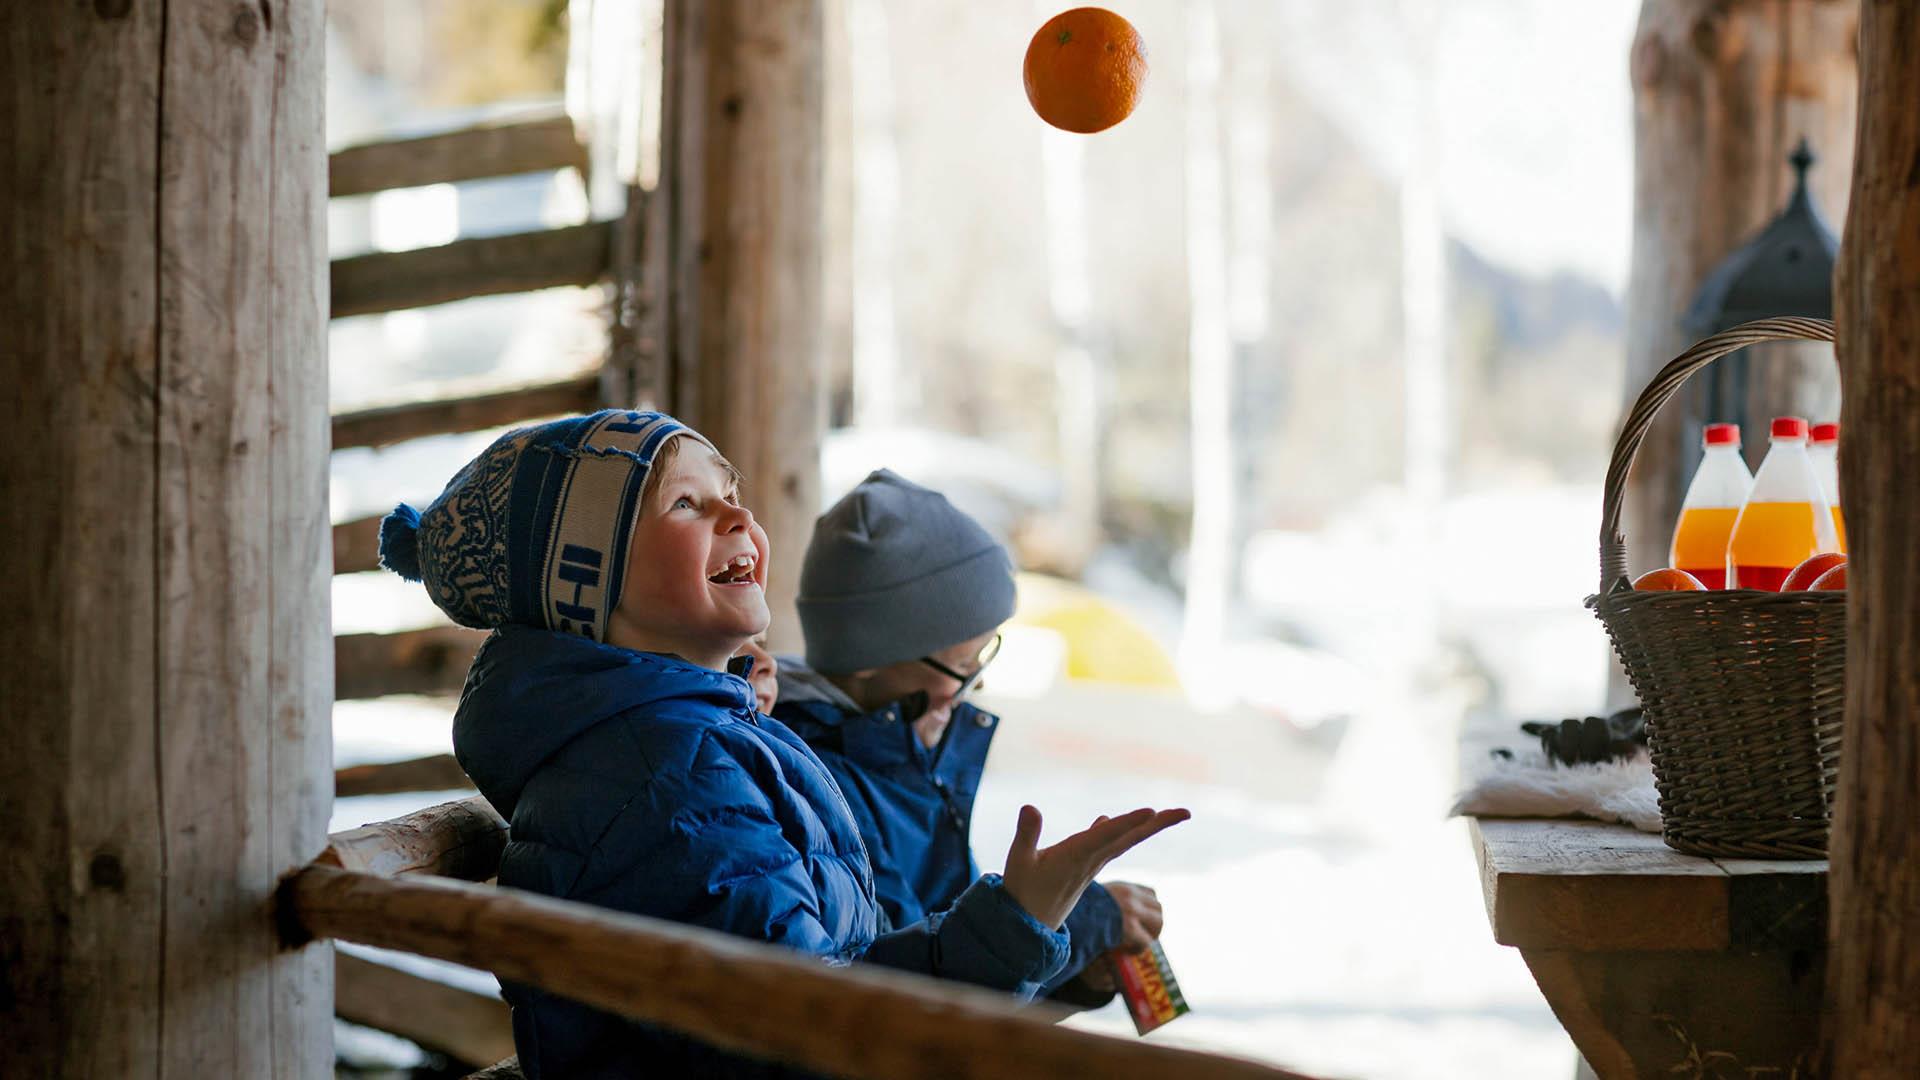 Jungs in Winterkleidung jonglieren mit einer Apfelsine. Auf dem Tisch ein Korb mit Brauseflaschen.